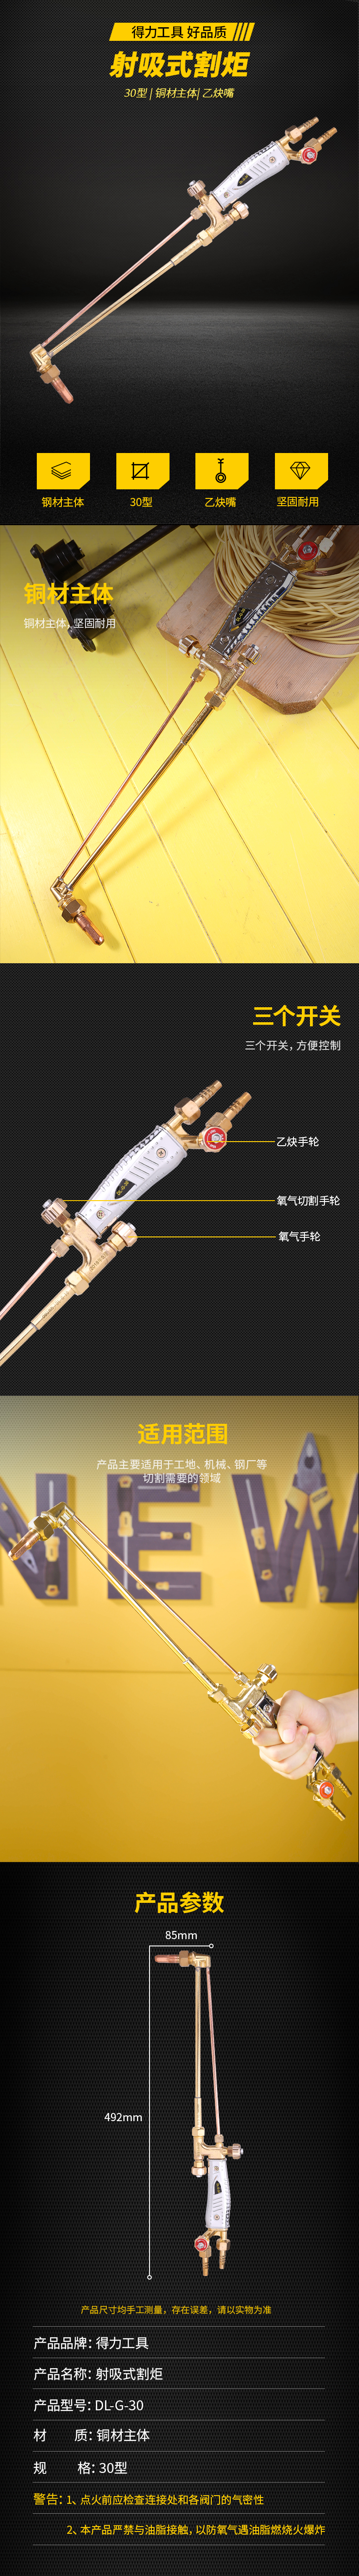 得力工具 DL-G-30 加强型割炬(银)-30型